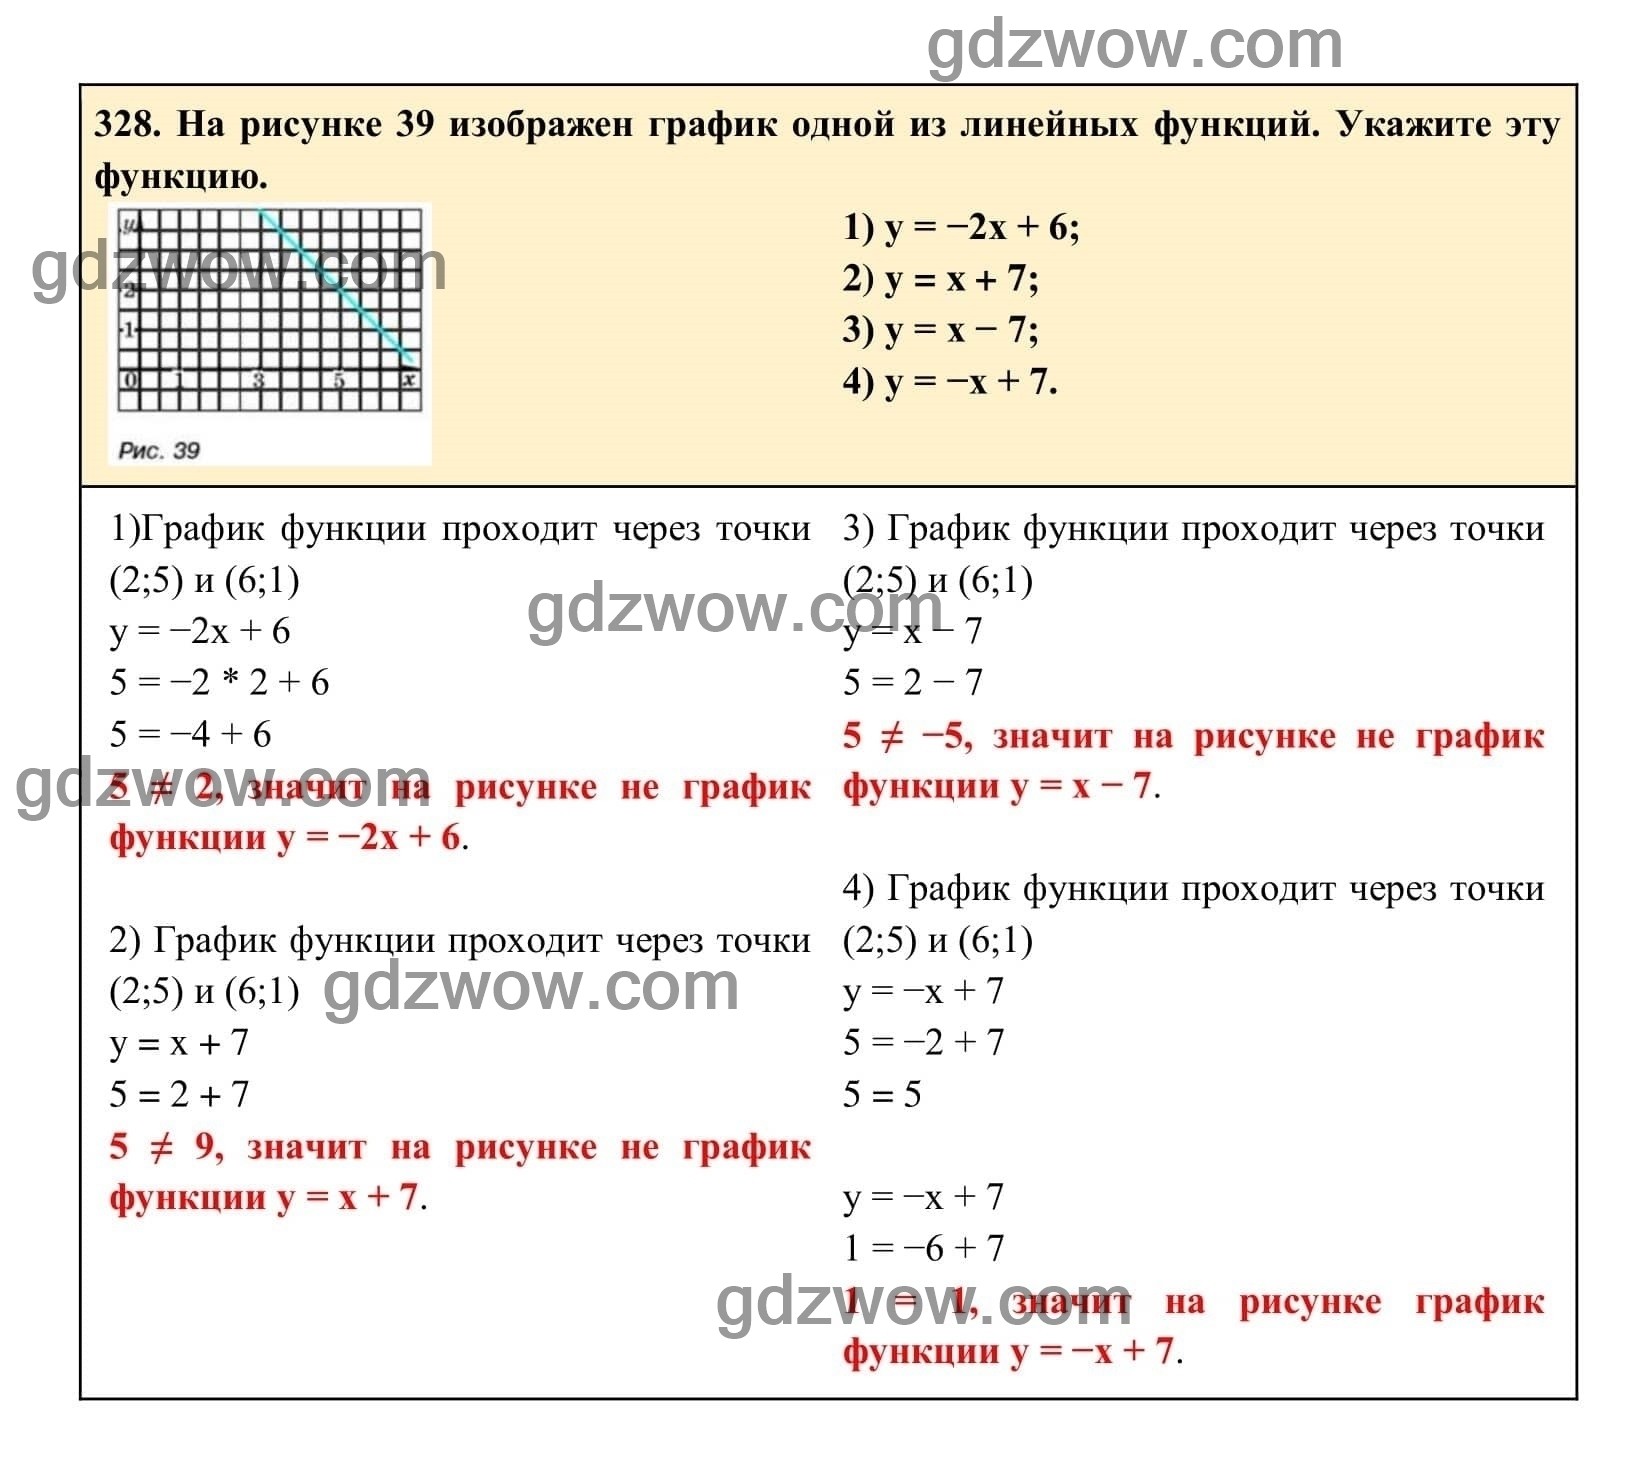 Упражнение 328 - ГДЗ по Алгебре 7 класс Учебник Макарычев (решебник) - GDZwow